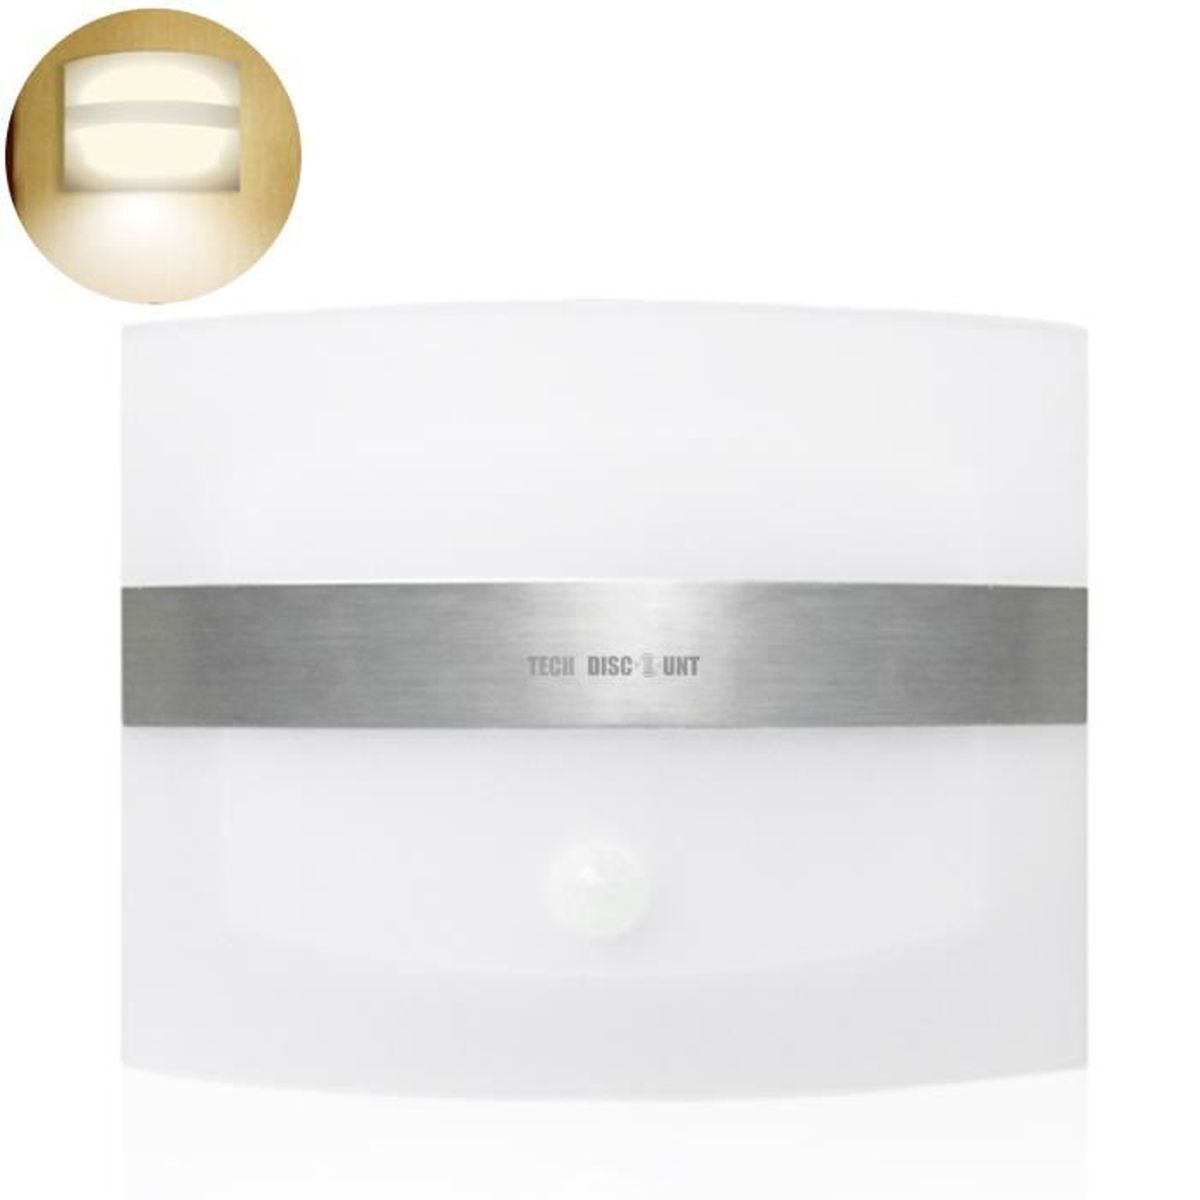 MLOQI Applique Murale Interieur LED, 16 Couleurs Lampe Murale Sans Fil  Touch à Télécommande avec Port de Charge USB Contrôle Tactile, Image Lampe  Batterie Rechargeable Lampe de Chevet pour (Blanc) : 